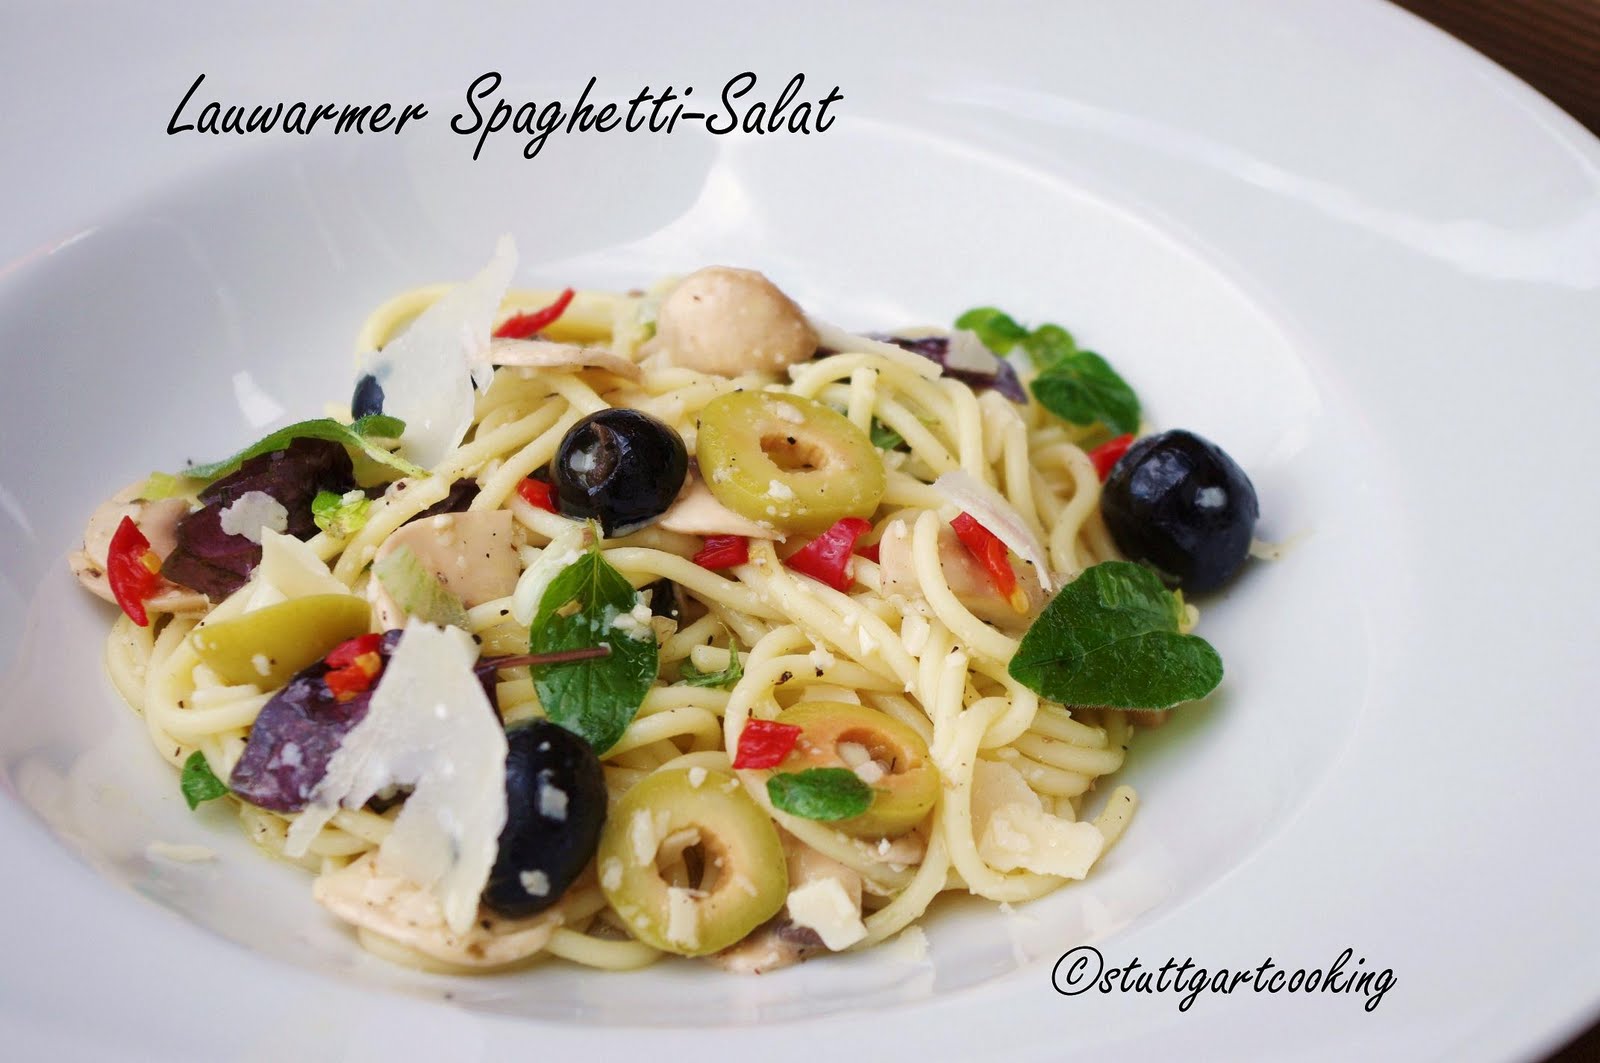 stuttgartcooking: Lauwarmer Spaghetti-Salat mit gebratenen Lachs